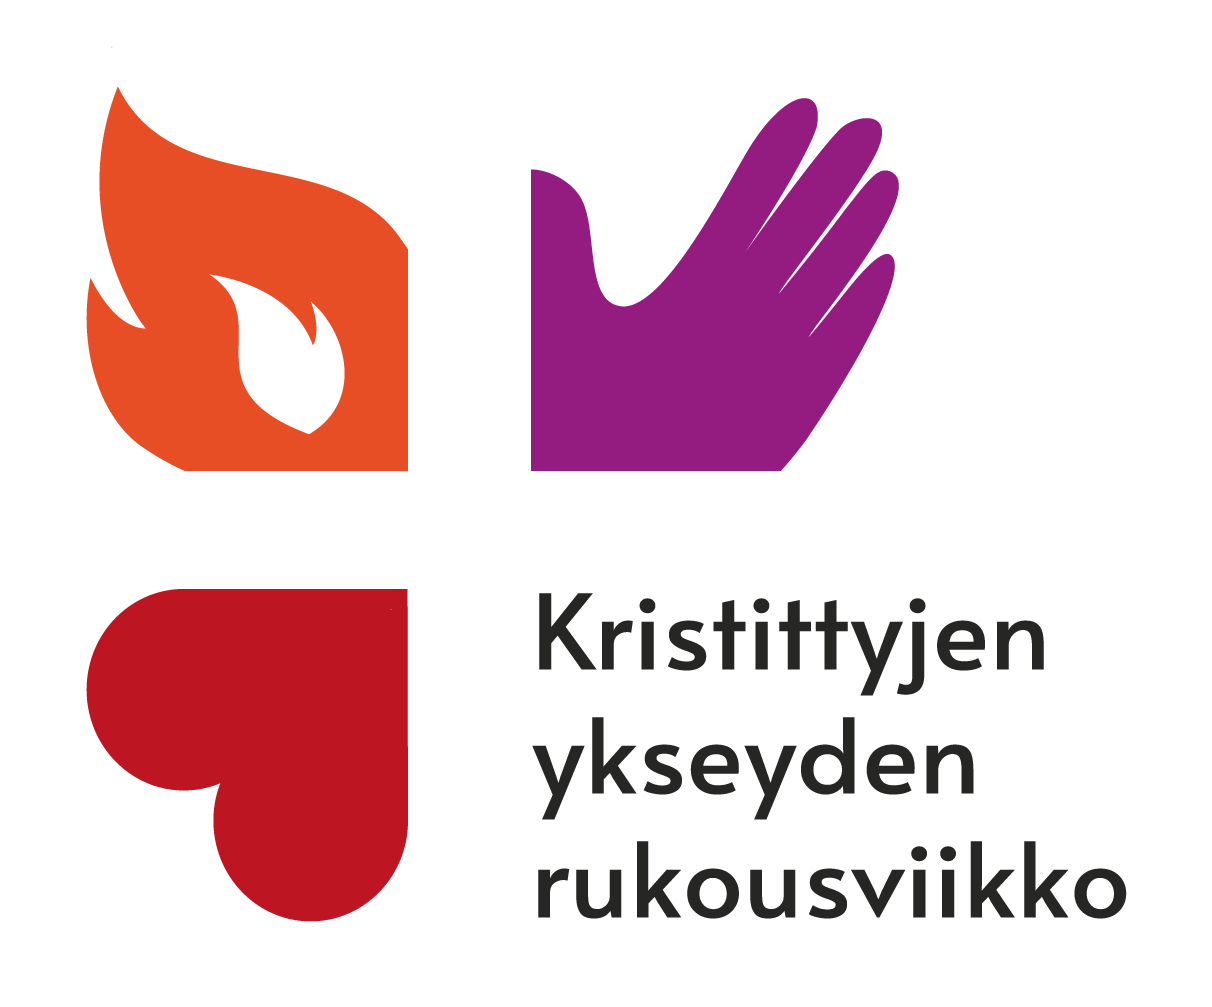 kristittyjen ykseyden rukousviikko logo violetti käsi oranssi liekki punainen sydän